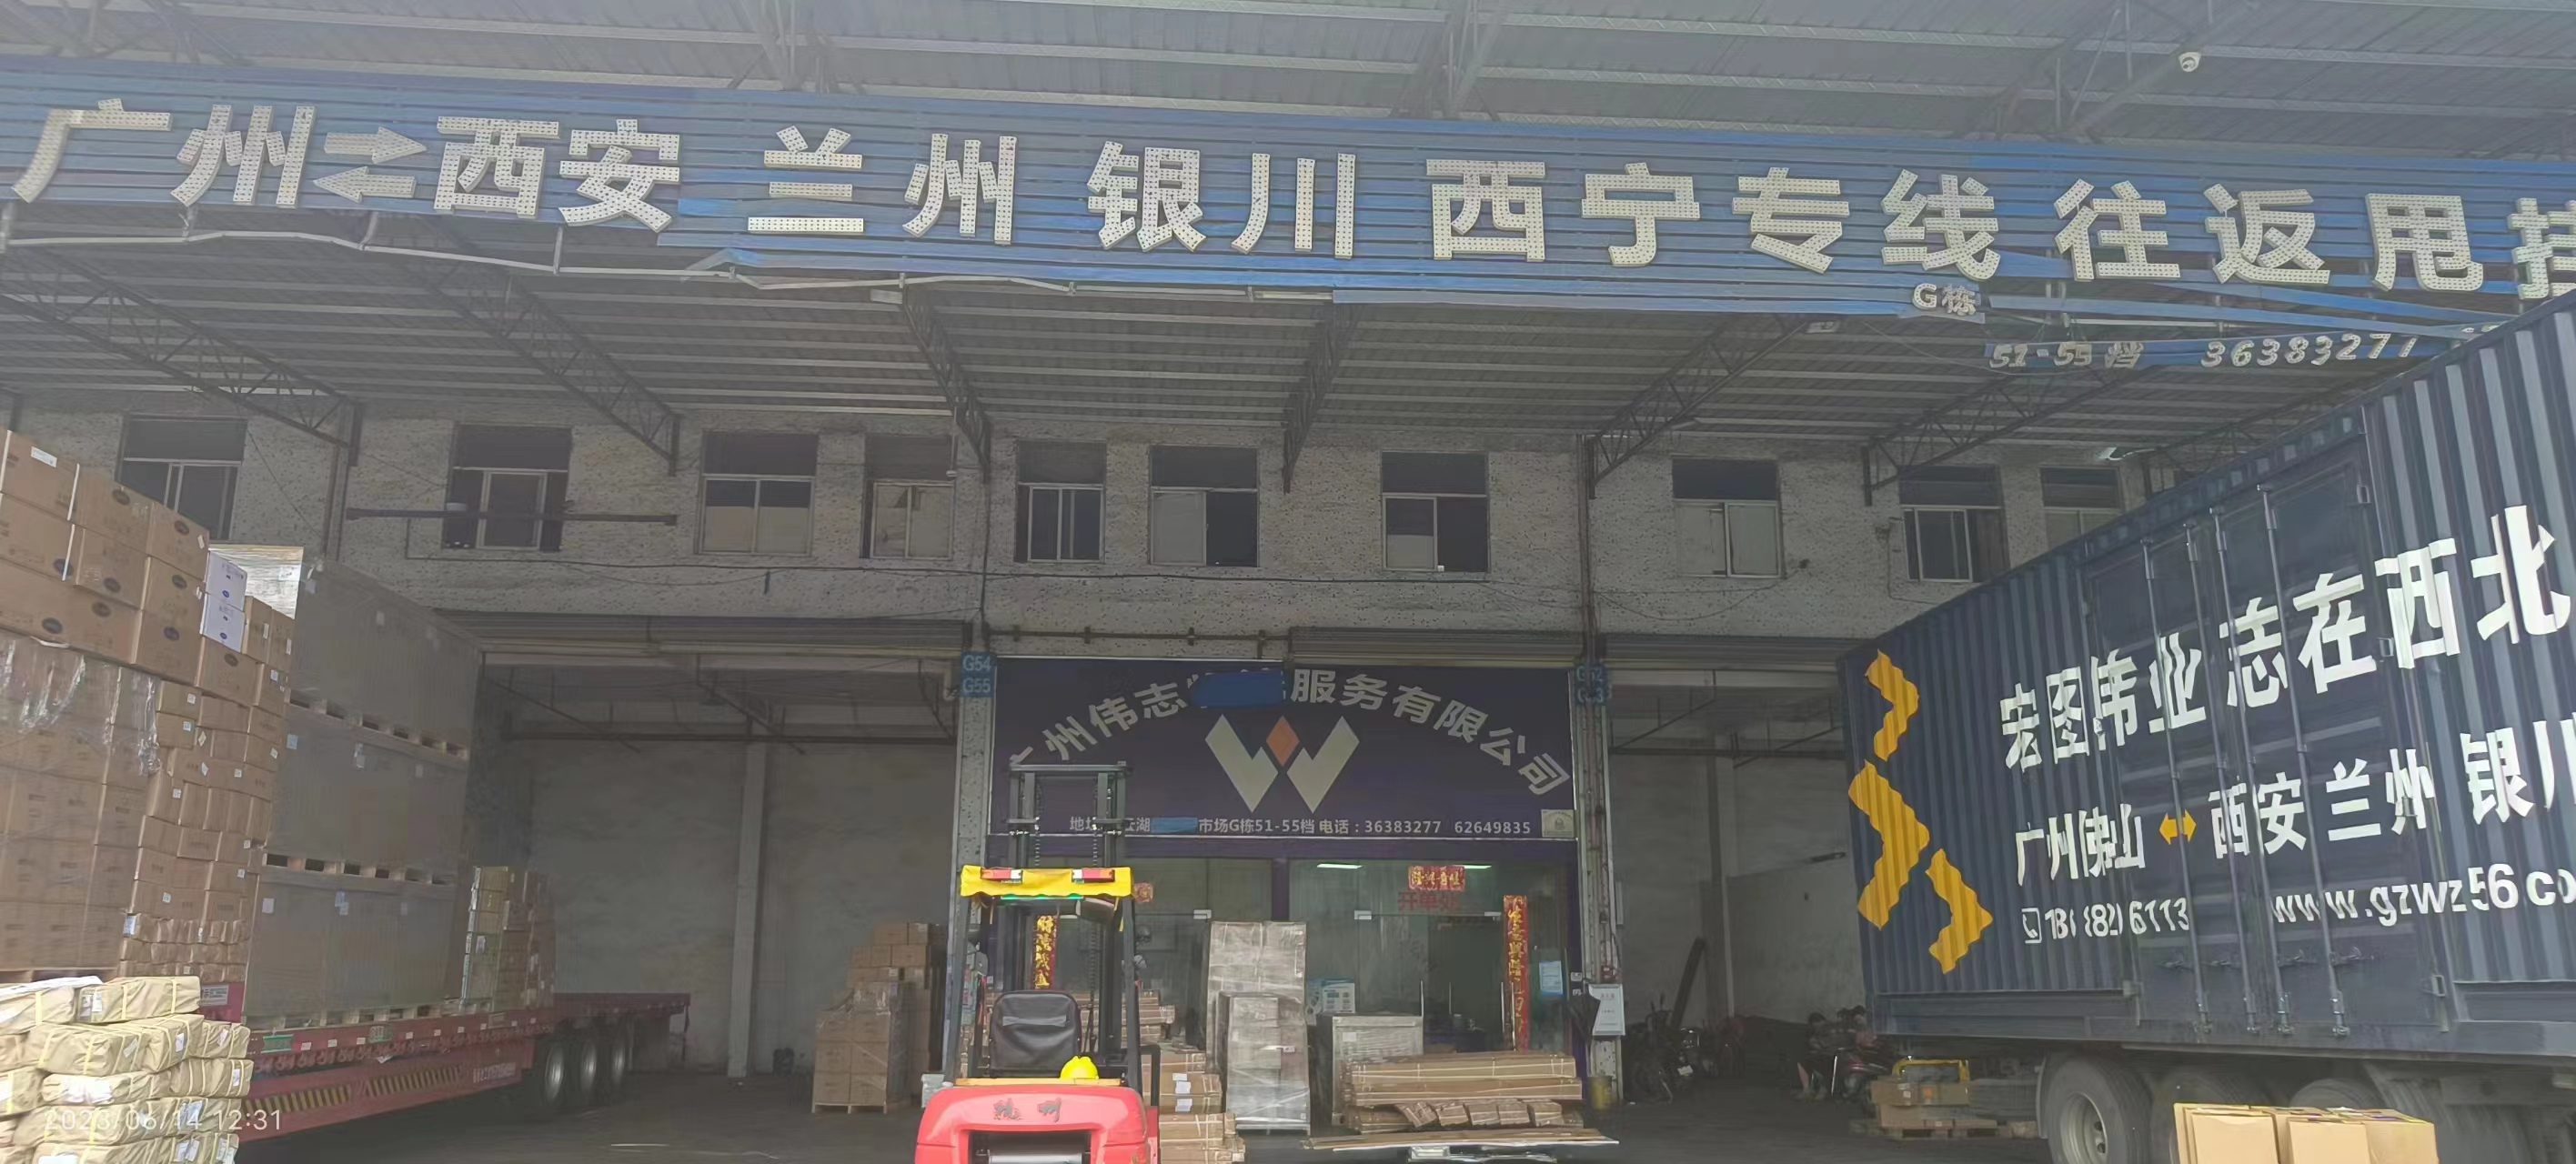 广州发西安长途公路 整车零担 往返甩挂 大件设备运输物流公司  广州往返西安陆运专线